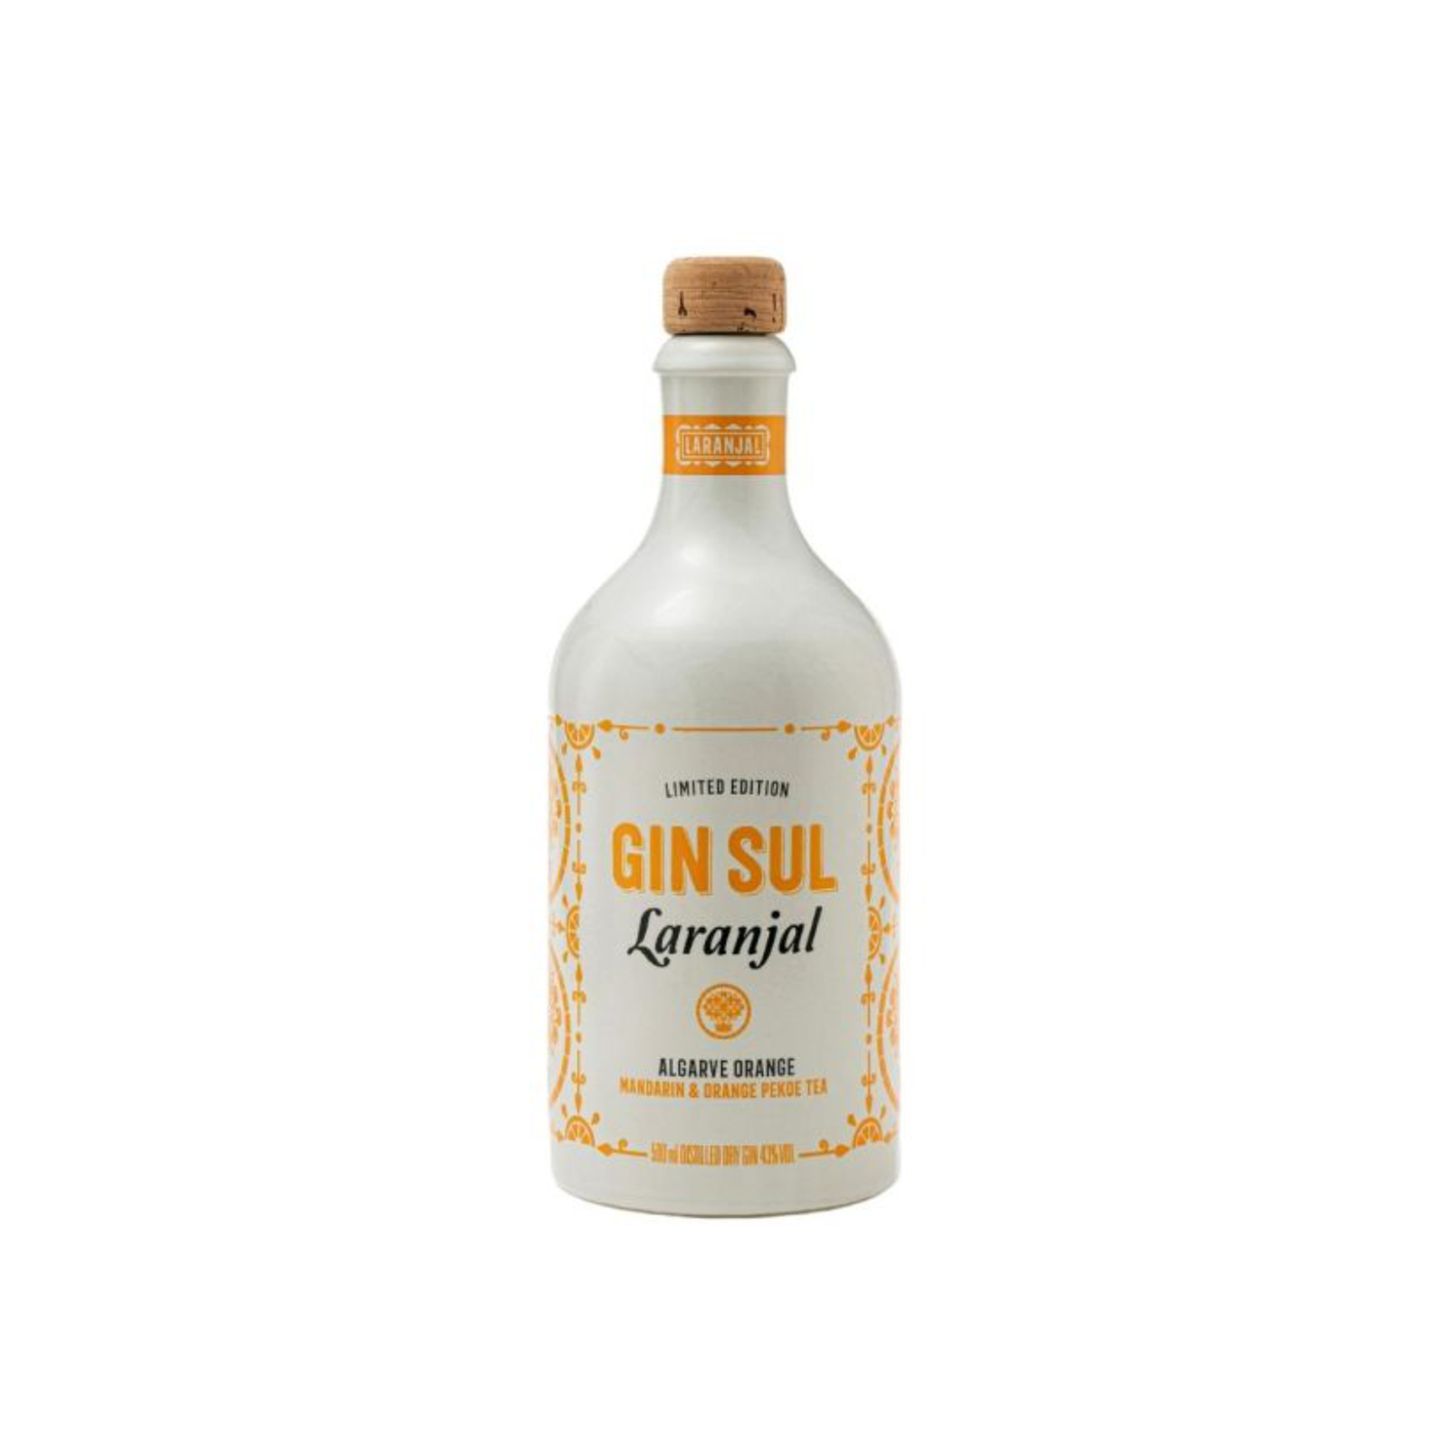 Auf der Homepage der Hamburger Spirituosen Manufaktur Gin Sul heißt es: Der Sommer im Glas ist da. Und das ist bei diesem Gin eine wirklich passende Zuschreibung. Die spritzige Orangennote ist selbst für Gin-Laien herauszuschmecken. Ich bin bereits großer Fan des "normalen" Gins von Gin Sul, aktuell bringe ich mich aber lieber mit der neuen Laranjal-Edition in Urlaubsstimmung und träume mich an die traumhaften Strände der Algarve. Ginflasche kostet ca. 35 Euro. Ilka, Mode- und Beautyredakteurin